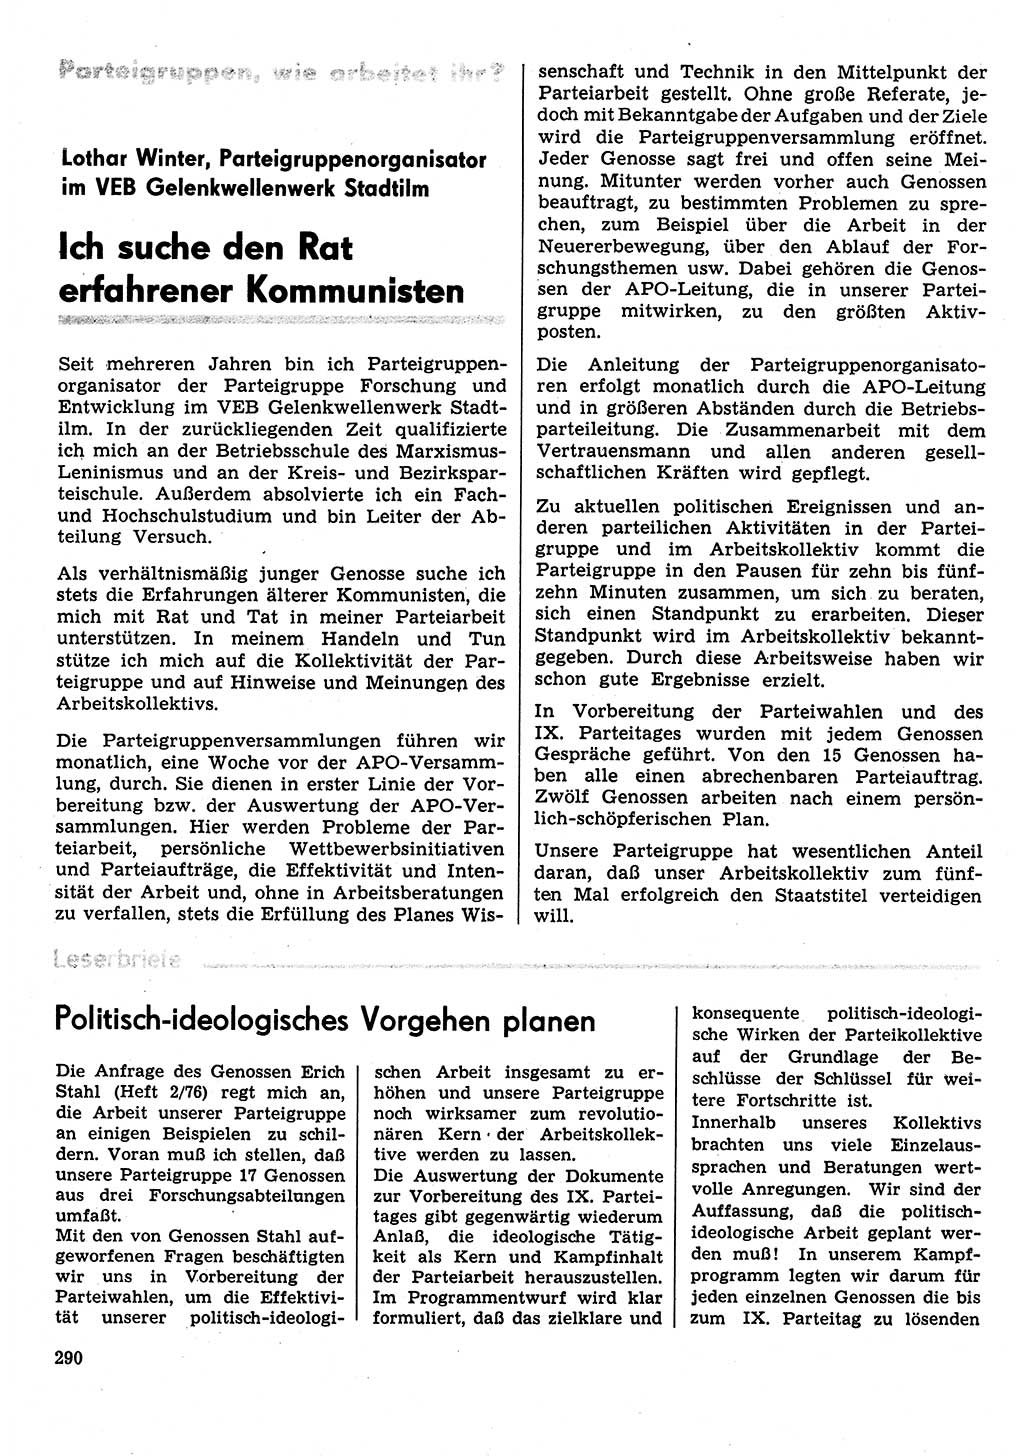 Neuer Weg (NW), Organ des Zentralkomitees (ZK) der SED (Sozialistische Einheitspartei Deutschlands) für Fragen des Parteilebens, 31. Jahrgang [Deutsche Demokratische Republik (DDR)] 1976, Seite 290 (NW ZK SED DDR 1976, S. 290)